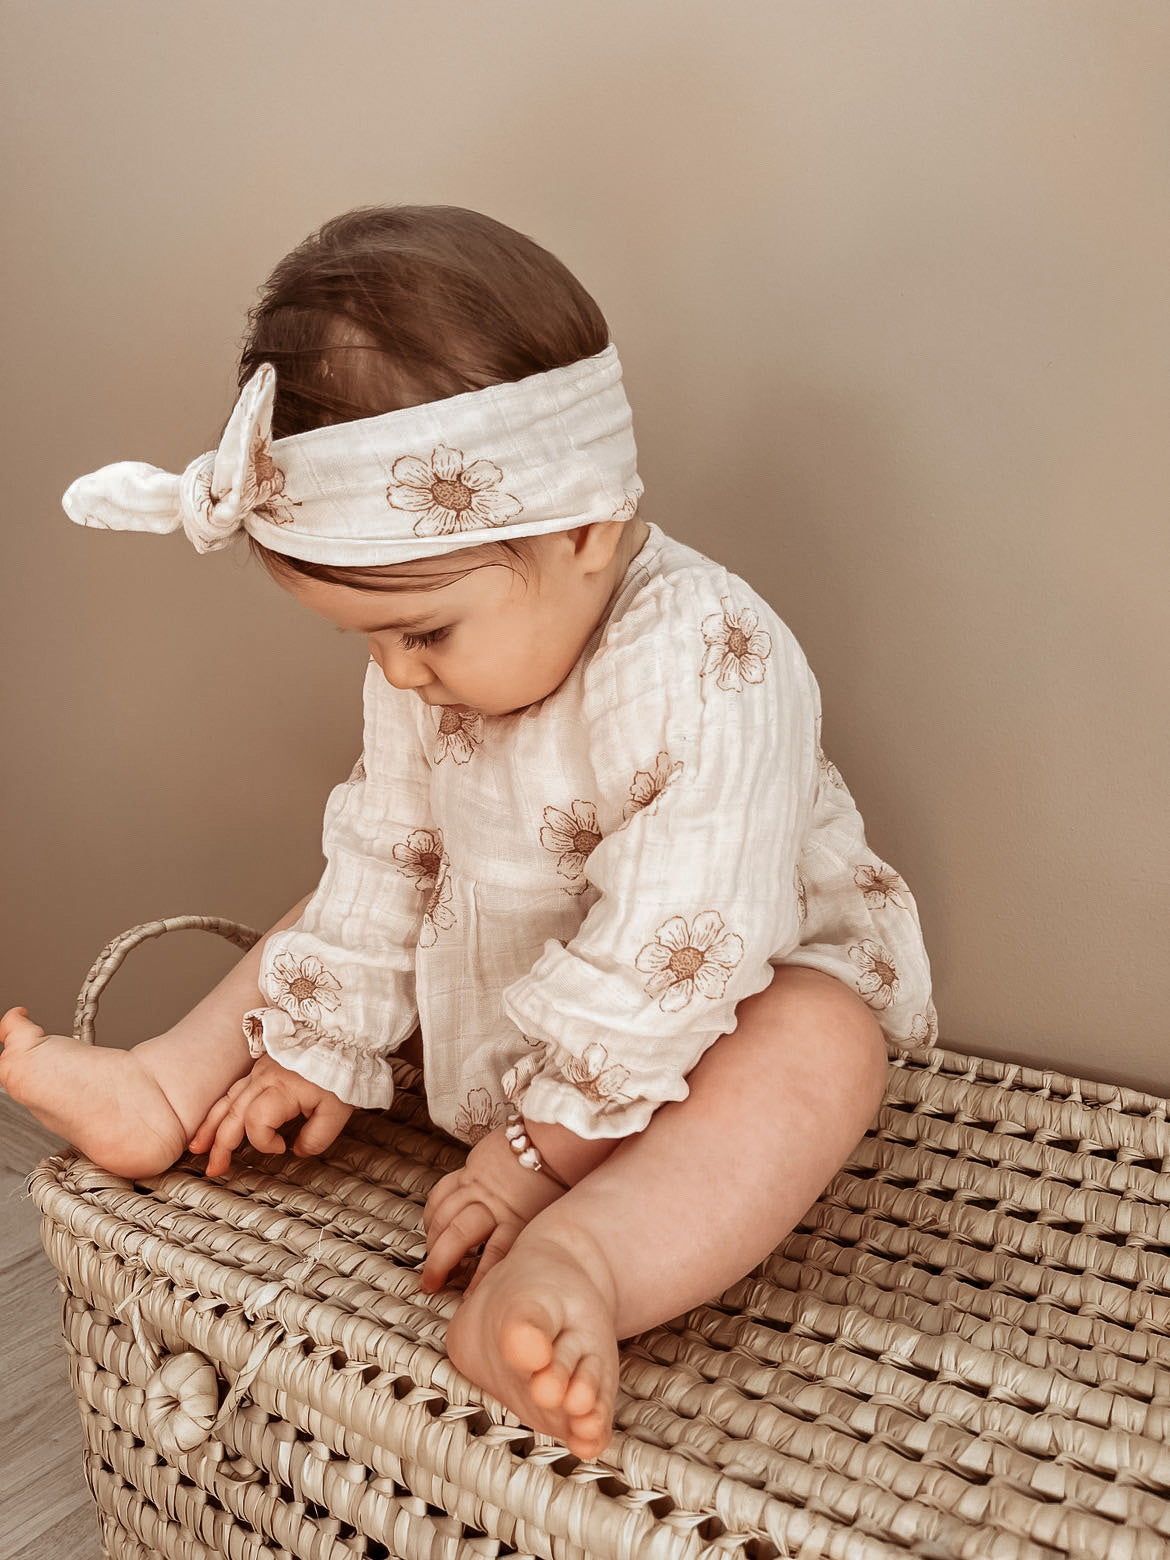 Acheter Fleur nouveau-né bébé bandeau élastique enfants bébé fille bandeaux  bandeau cheveux bébé cheveux accessoires